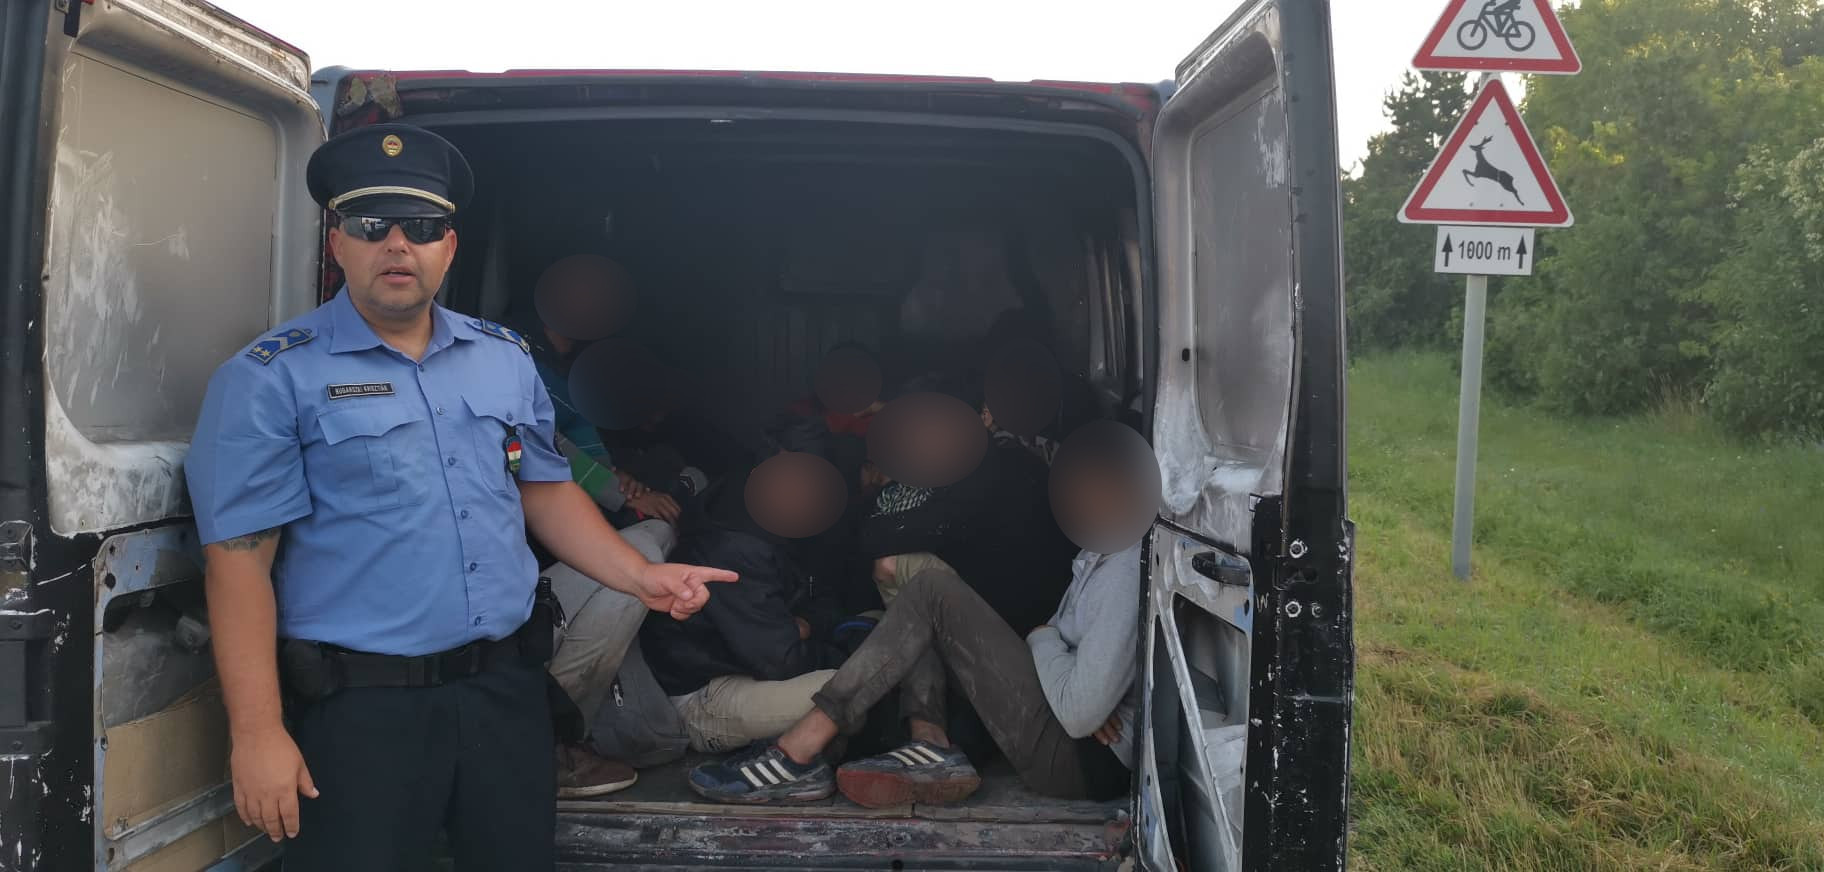 12 afgán és pakisztáni férfi volt egy román kisbuszban Kölkednél